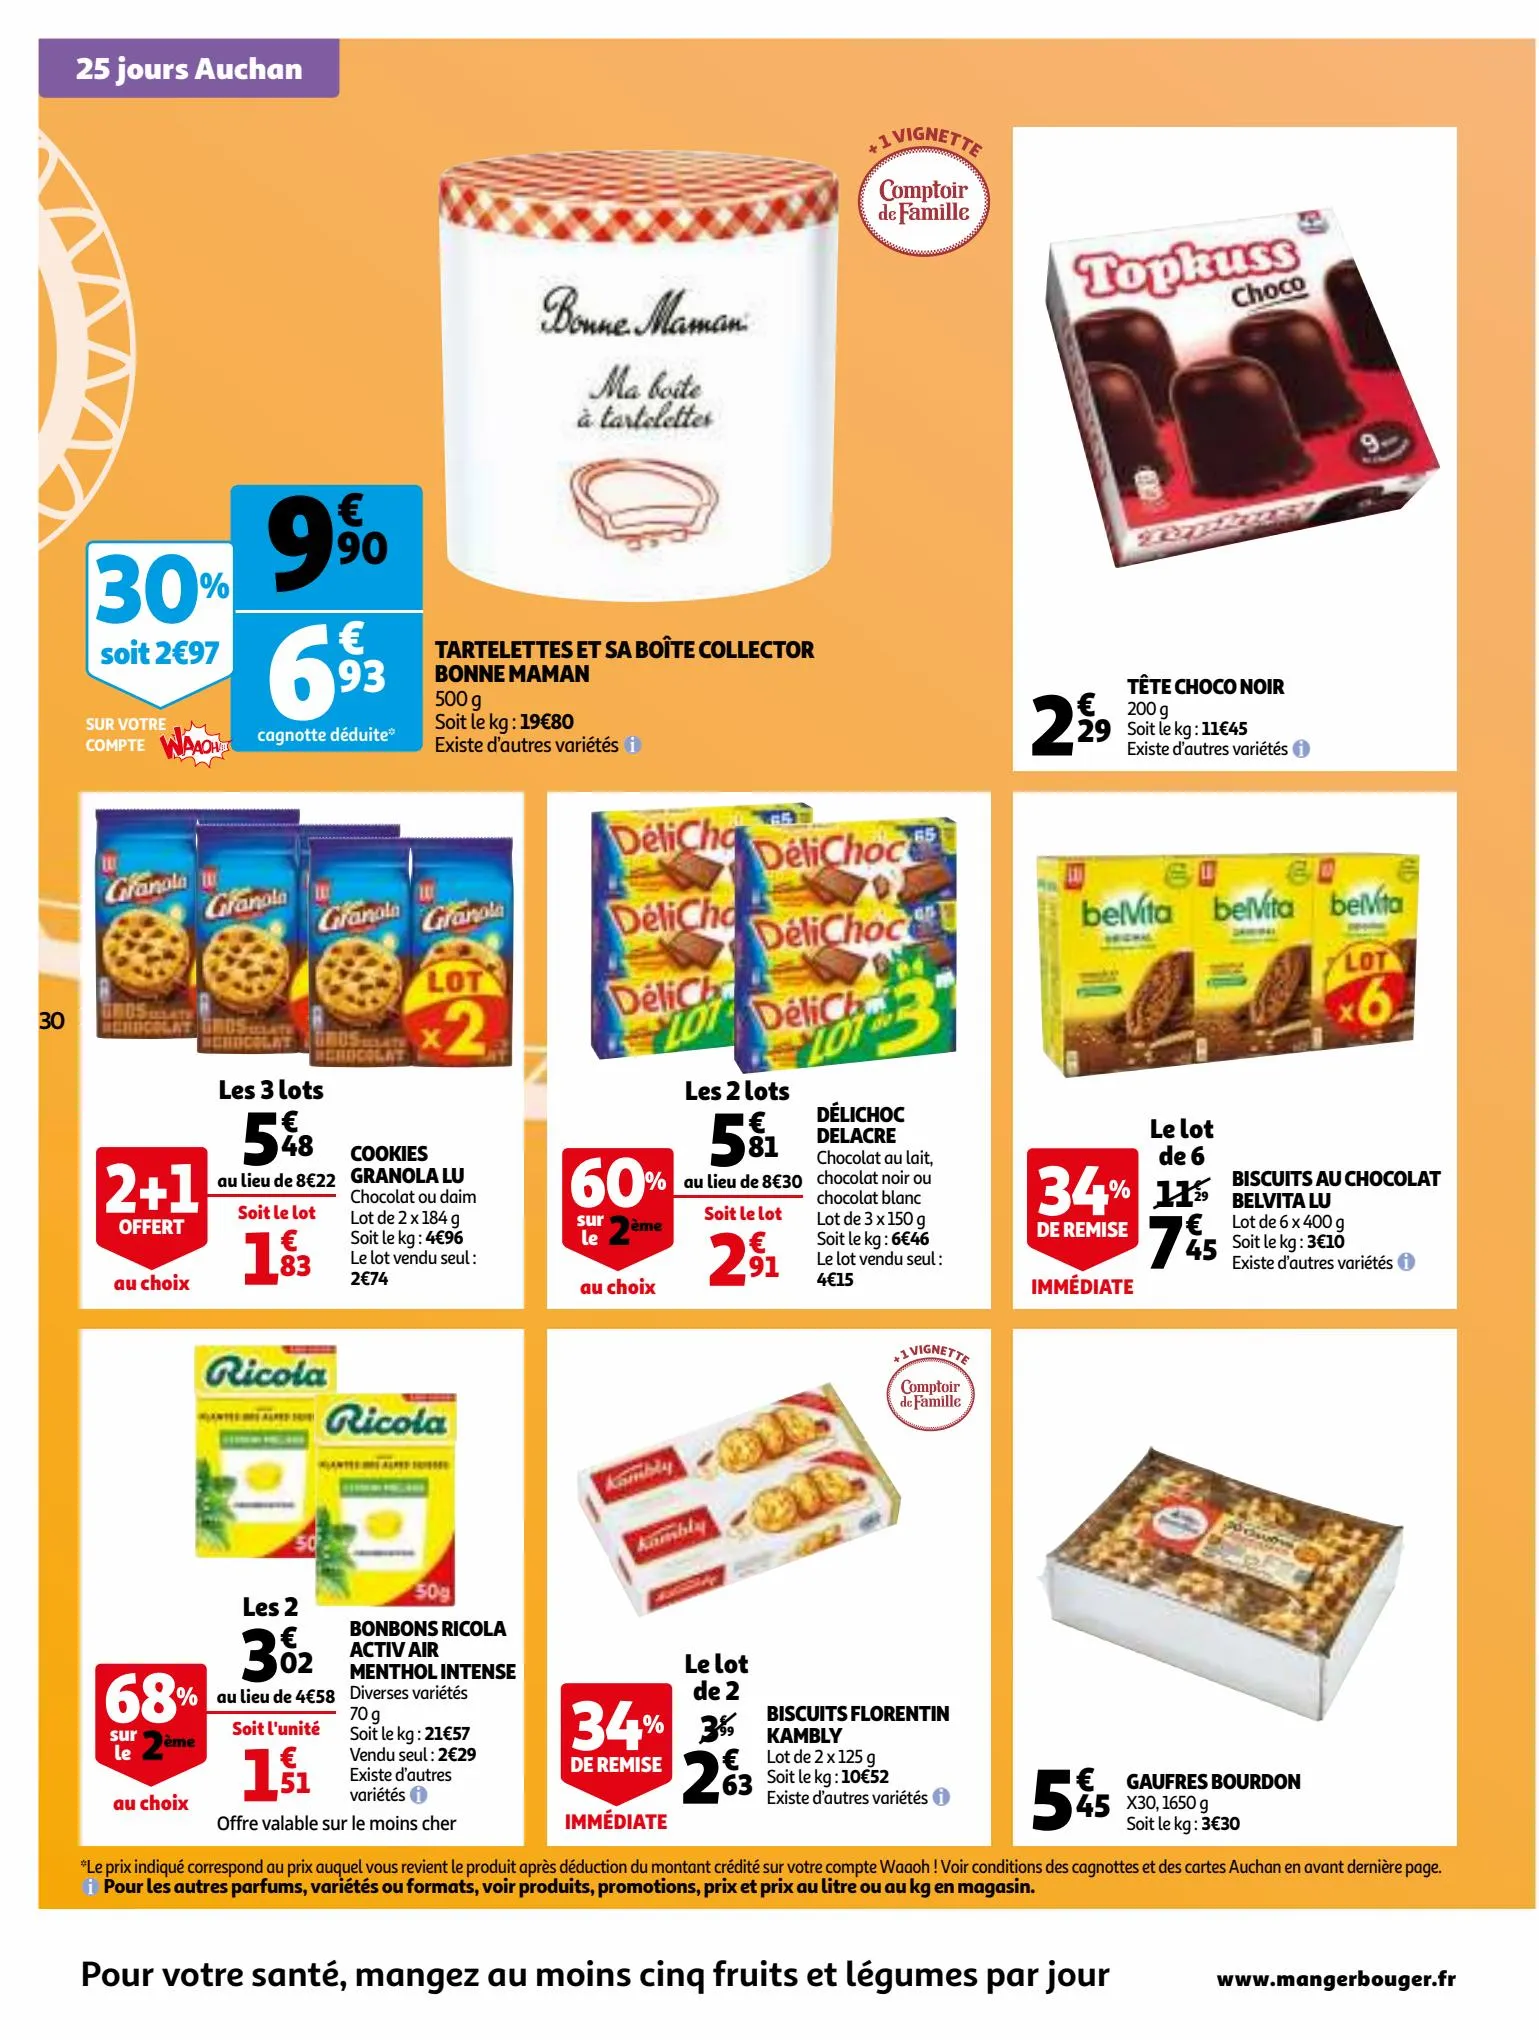 Catalogue 25 jours Auchan, page 00030